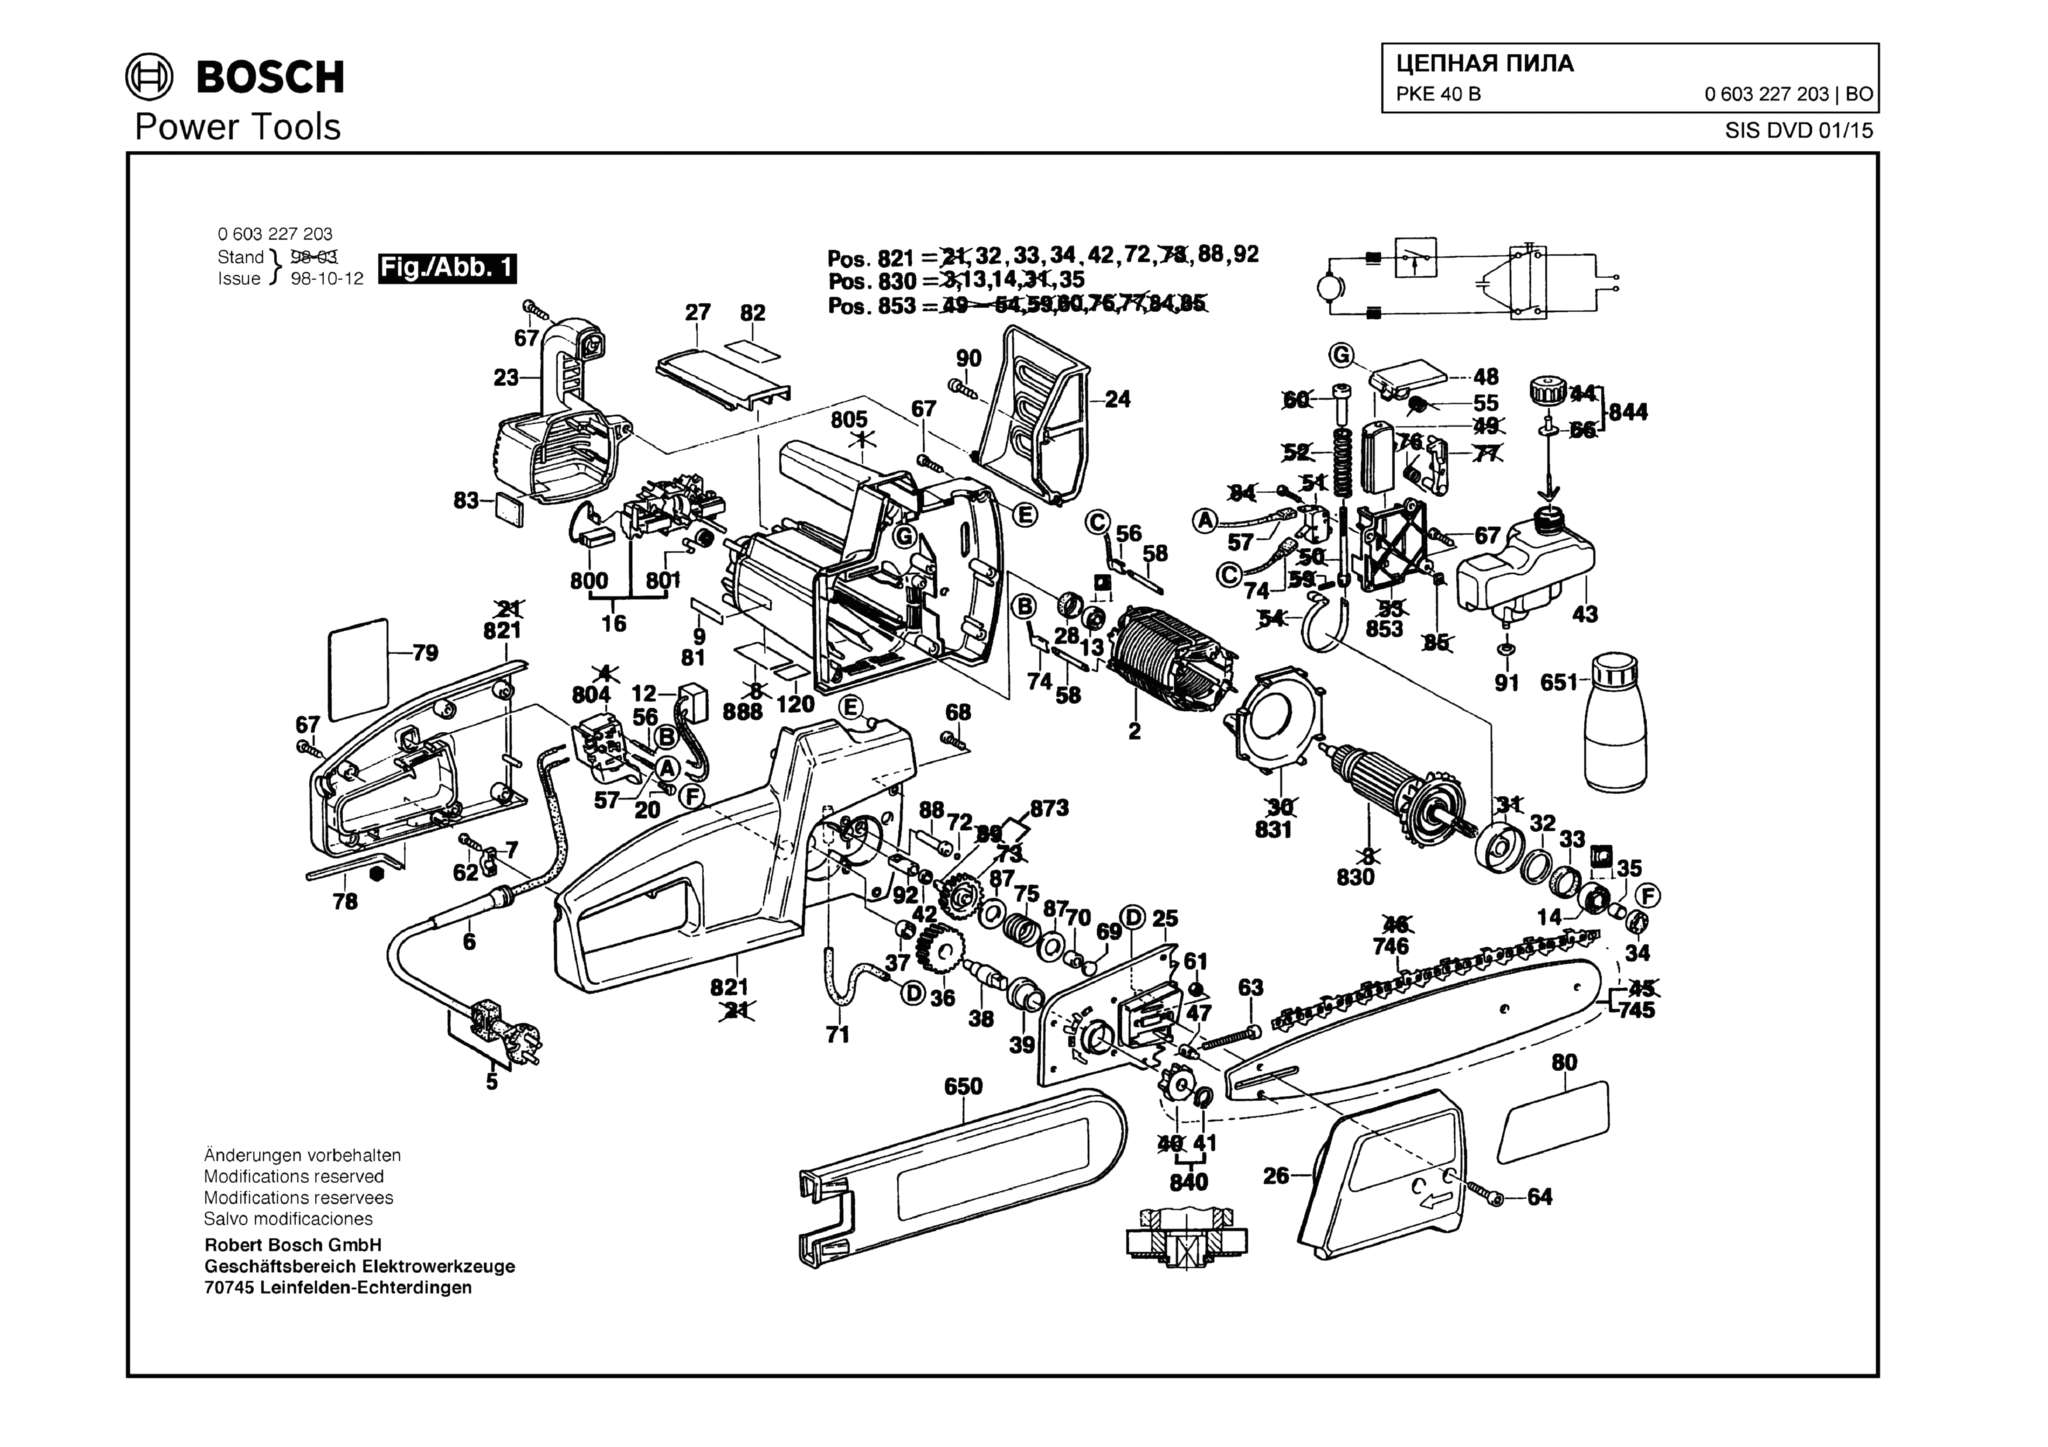 Запчасти, схема и деталировка Bosch PKE 40 B (ТИП 0603227203)